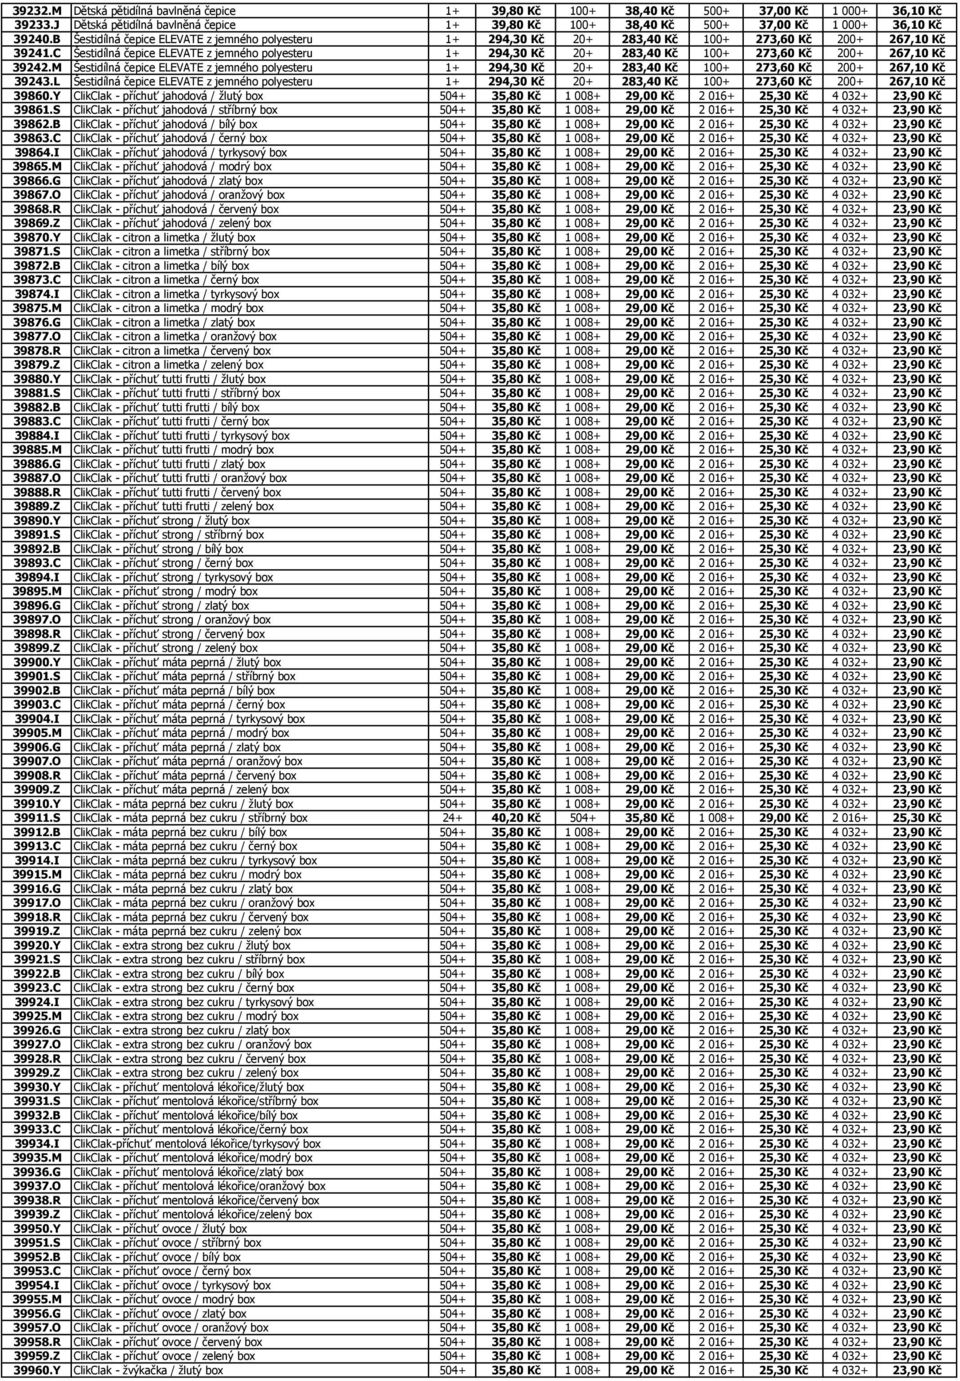 C Šestidílná čepice ELEVATE z jemného polyesteru 1+ 294,30 Kč 20+ 283,40 Kč 100+ 273,60 Kč 200+ 267,10 Kč 39242.